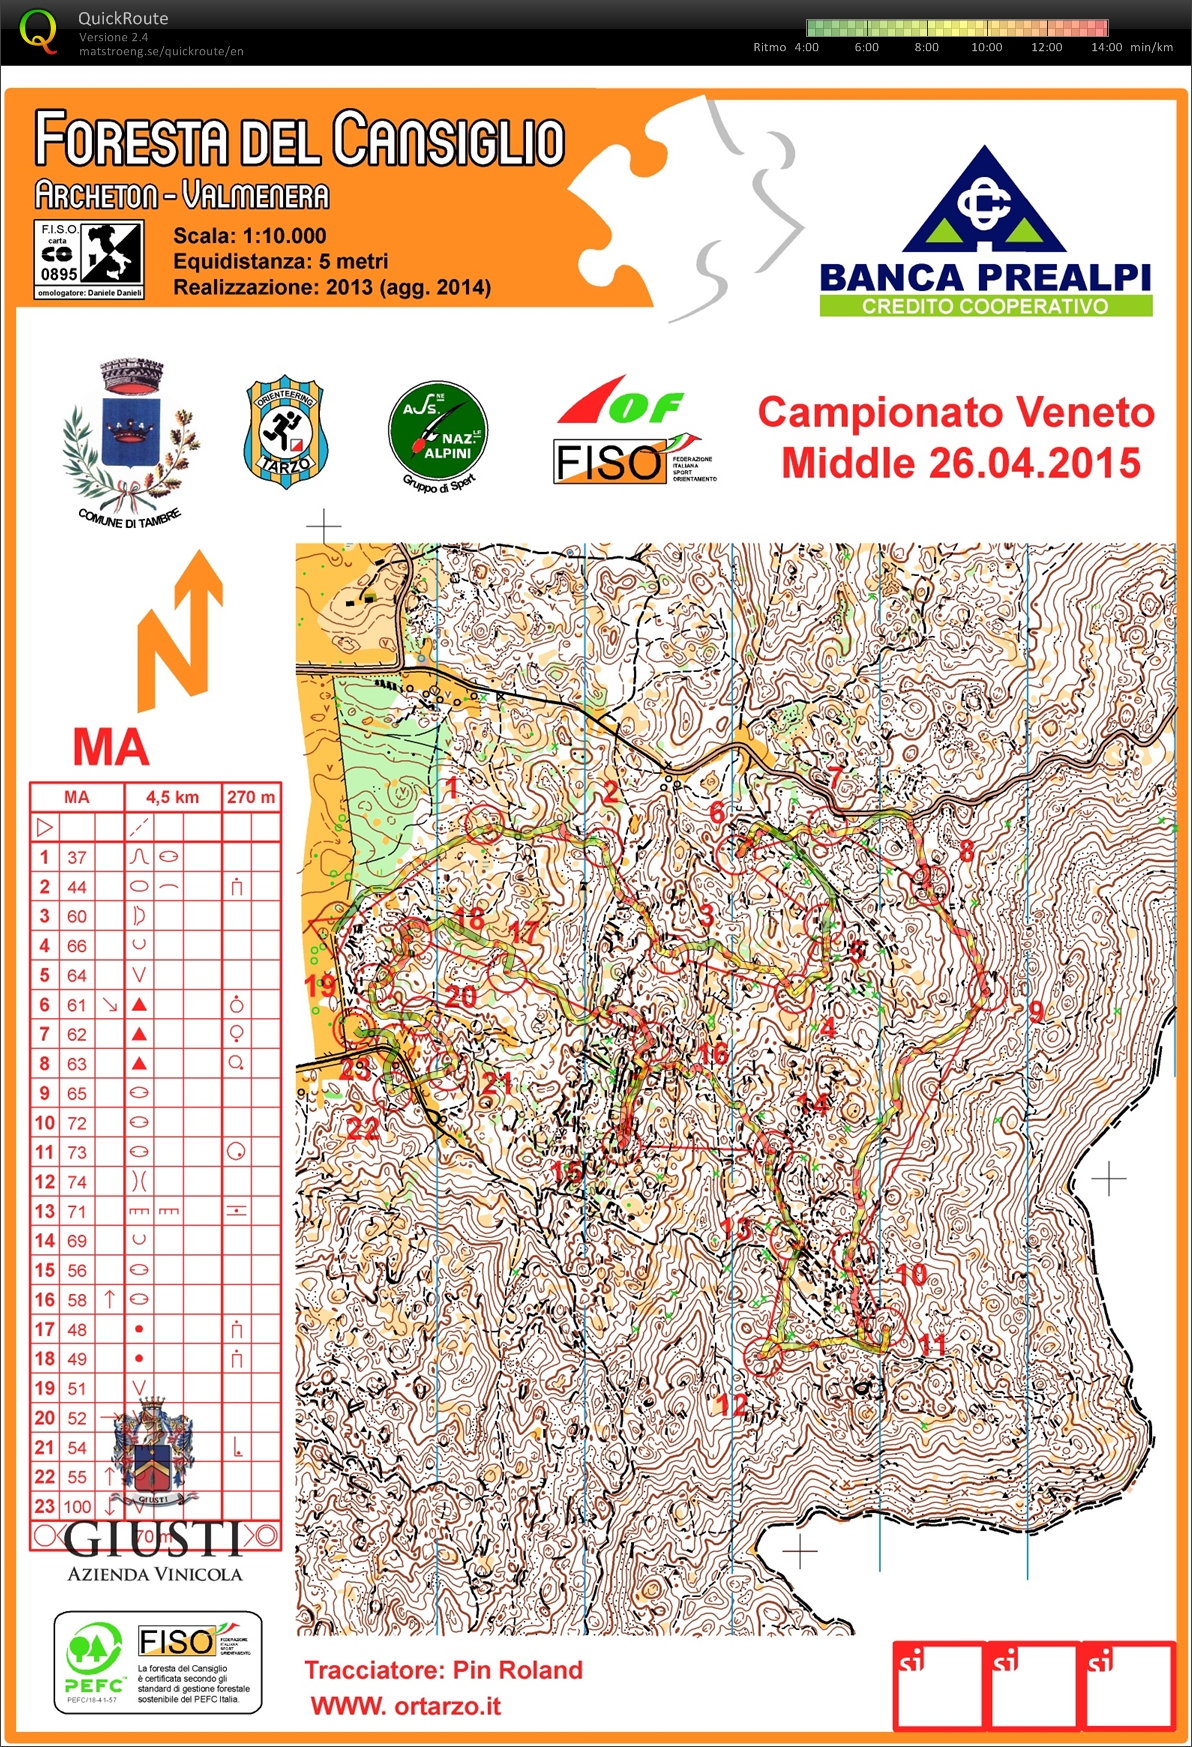 Campionato Veneto Middle 2015 (26.04.2015)